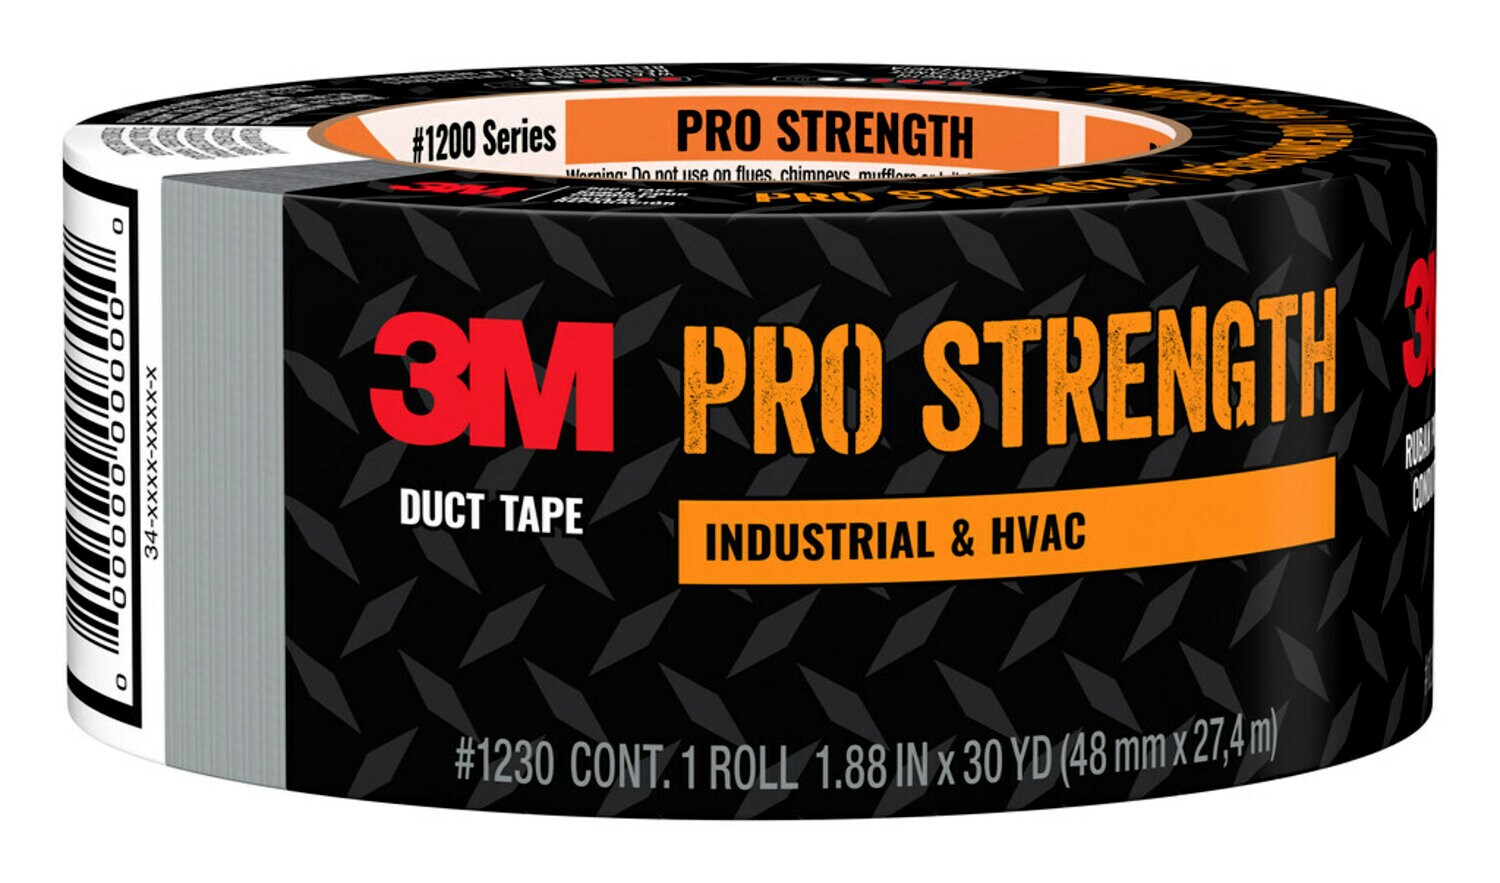 7100252747 - 3M Pro Strength Duct Tape 1230-A 1.88 in x 30 yd (48.0 mm x 27.4 m) 24 rls/cs